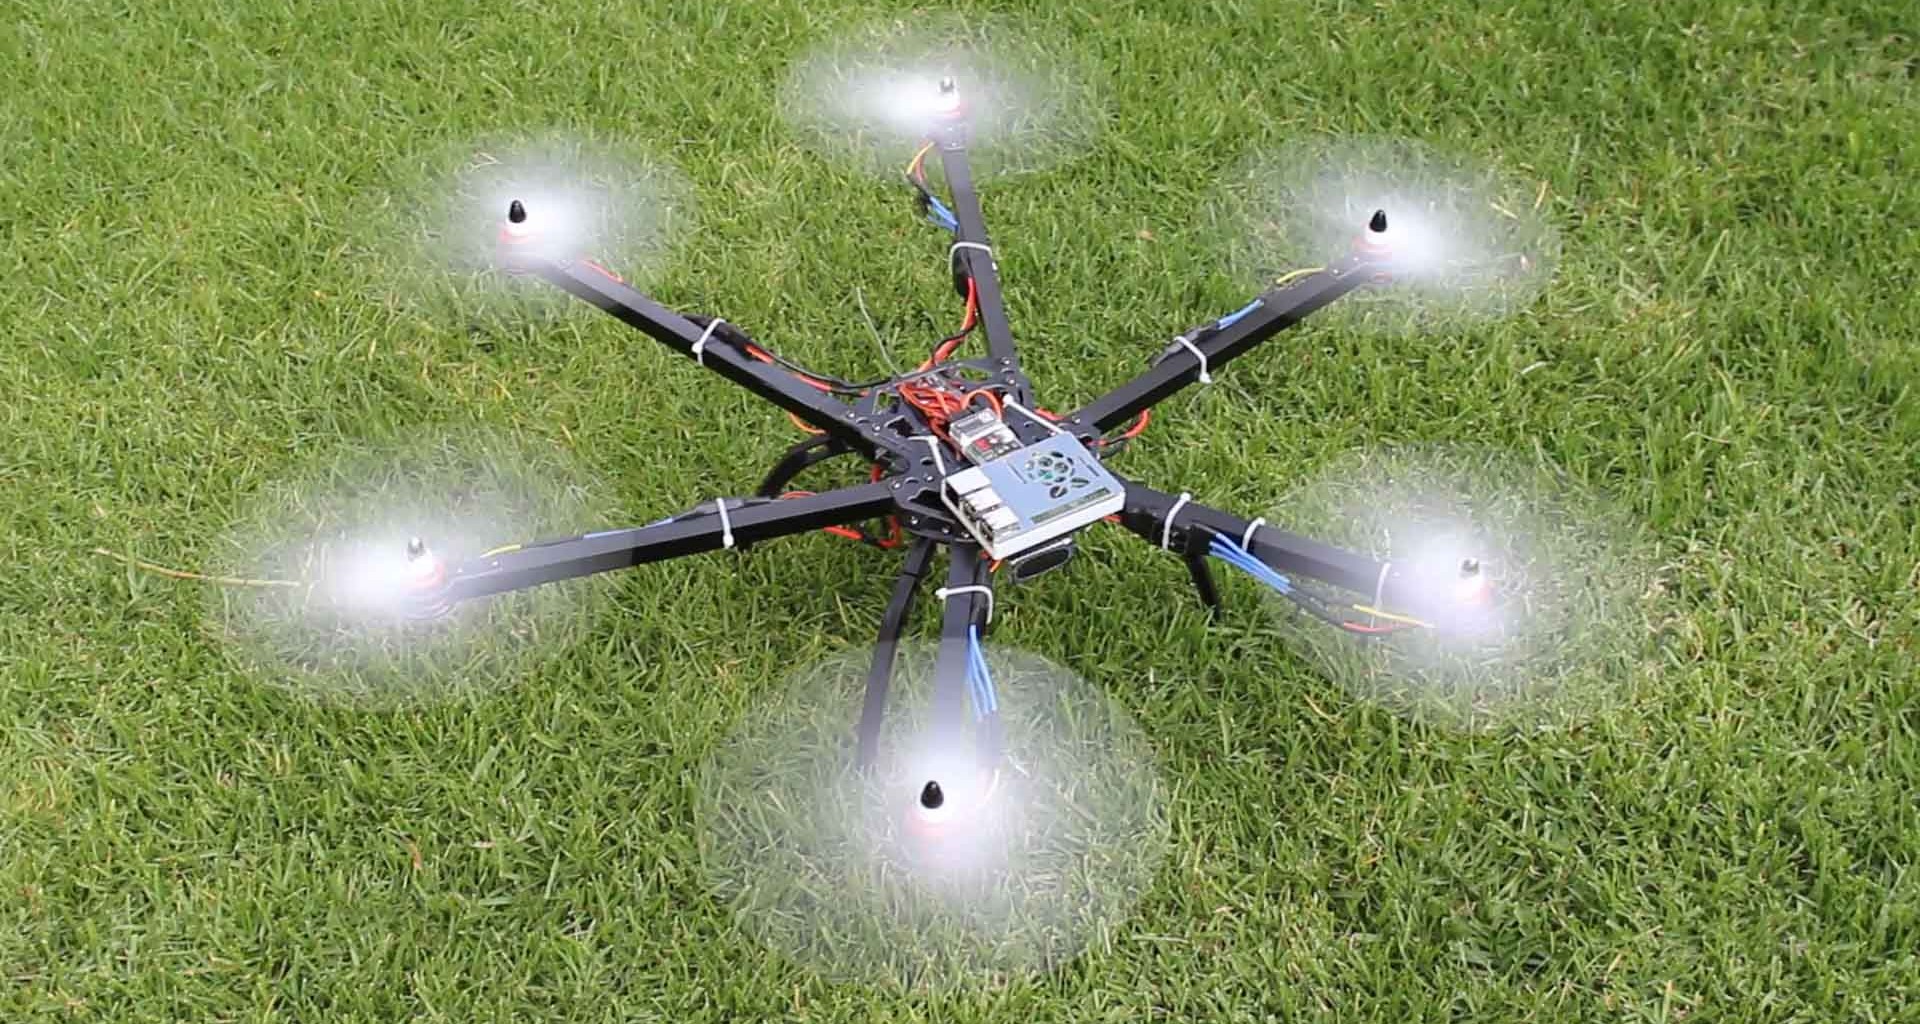 Dron de monitoreo ambiental en prueba de vuelo